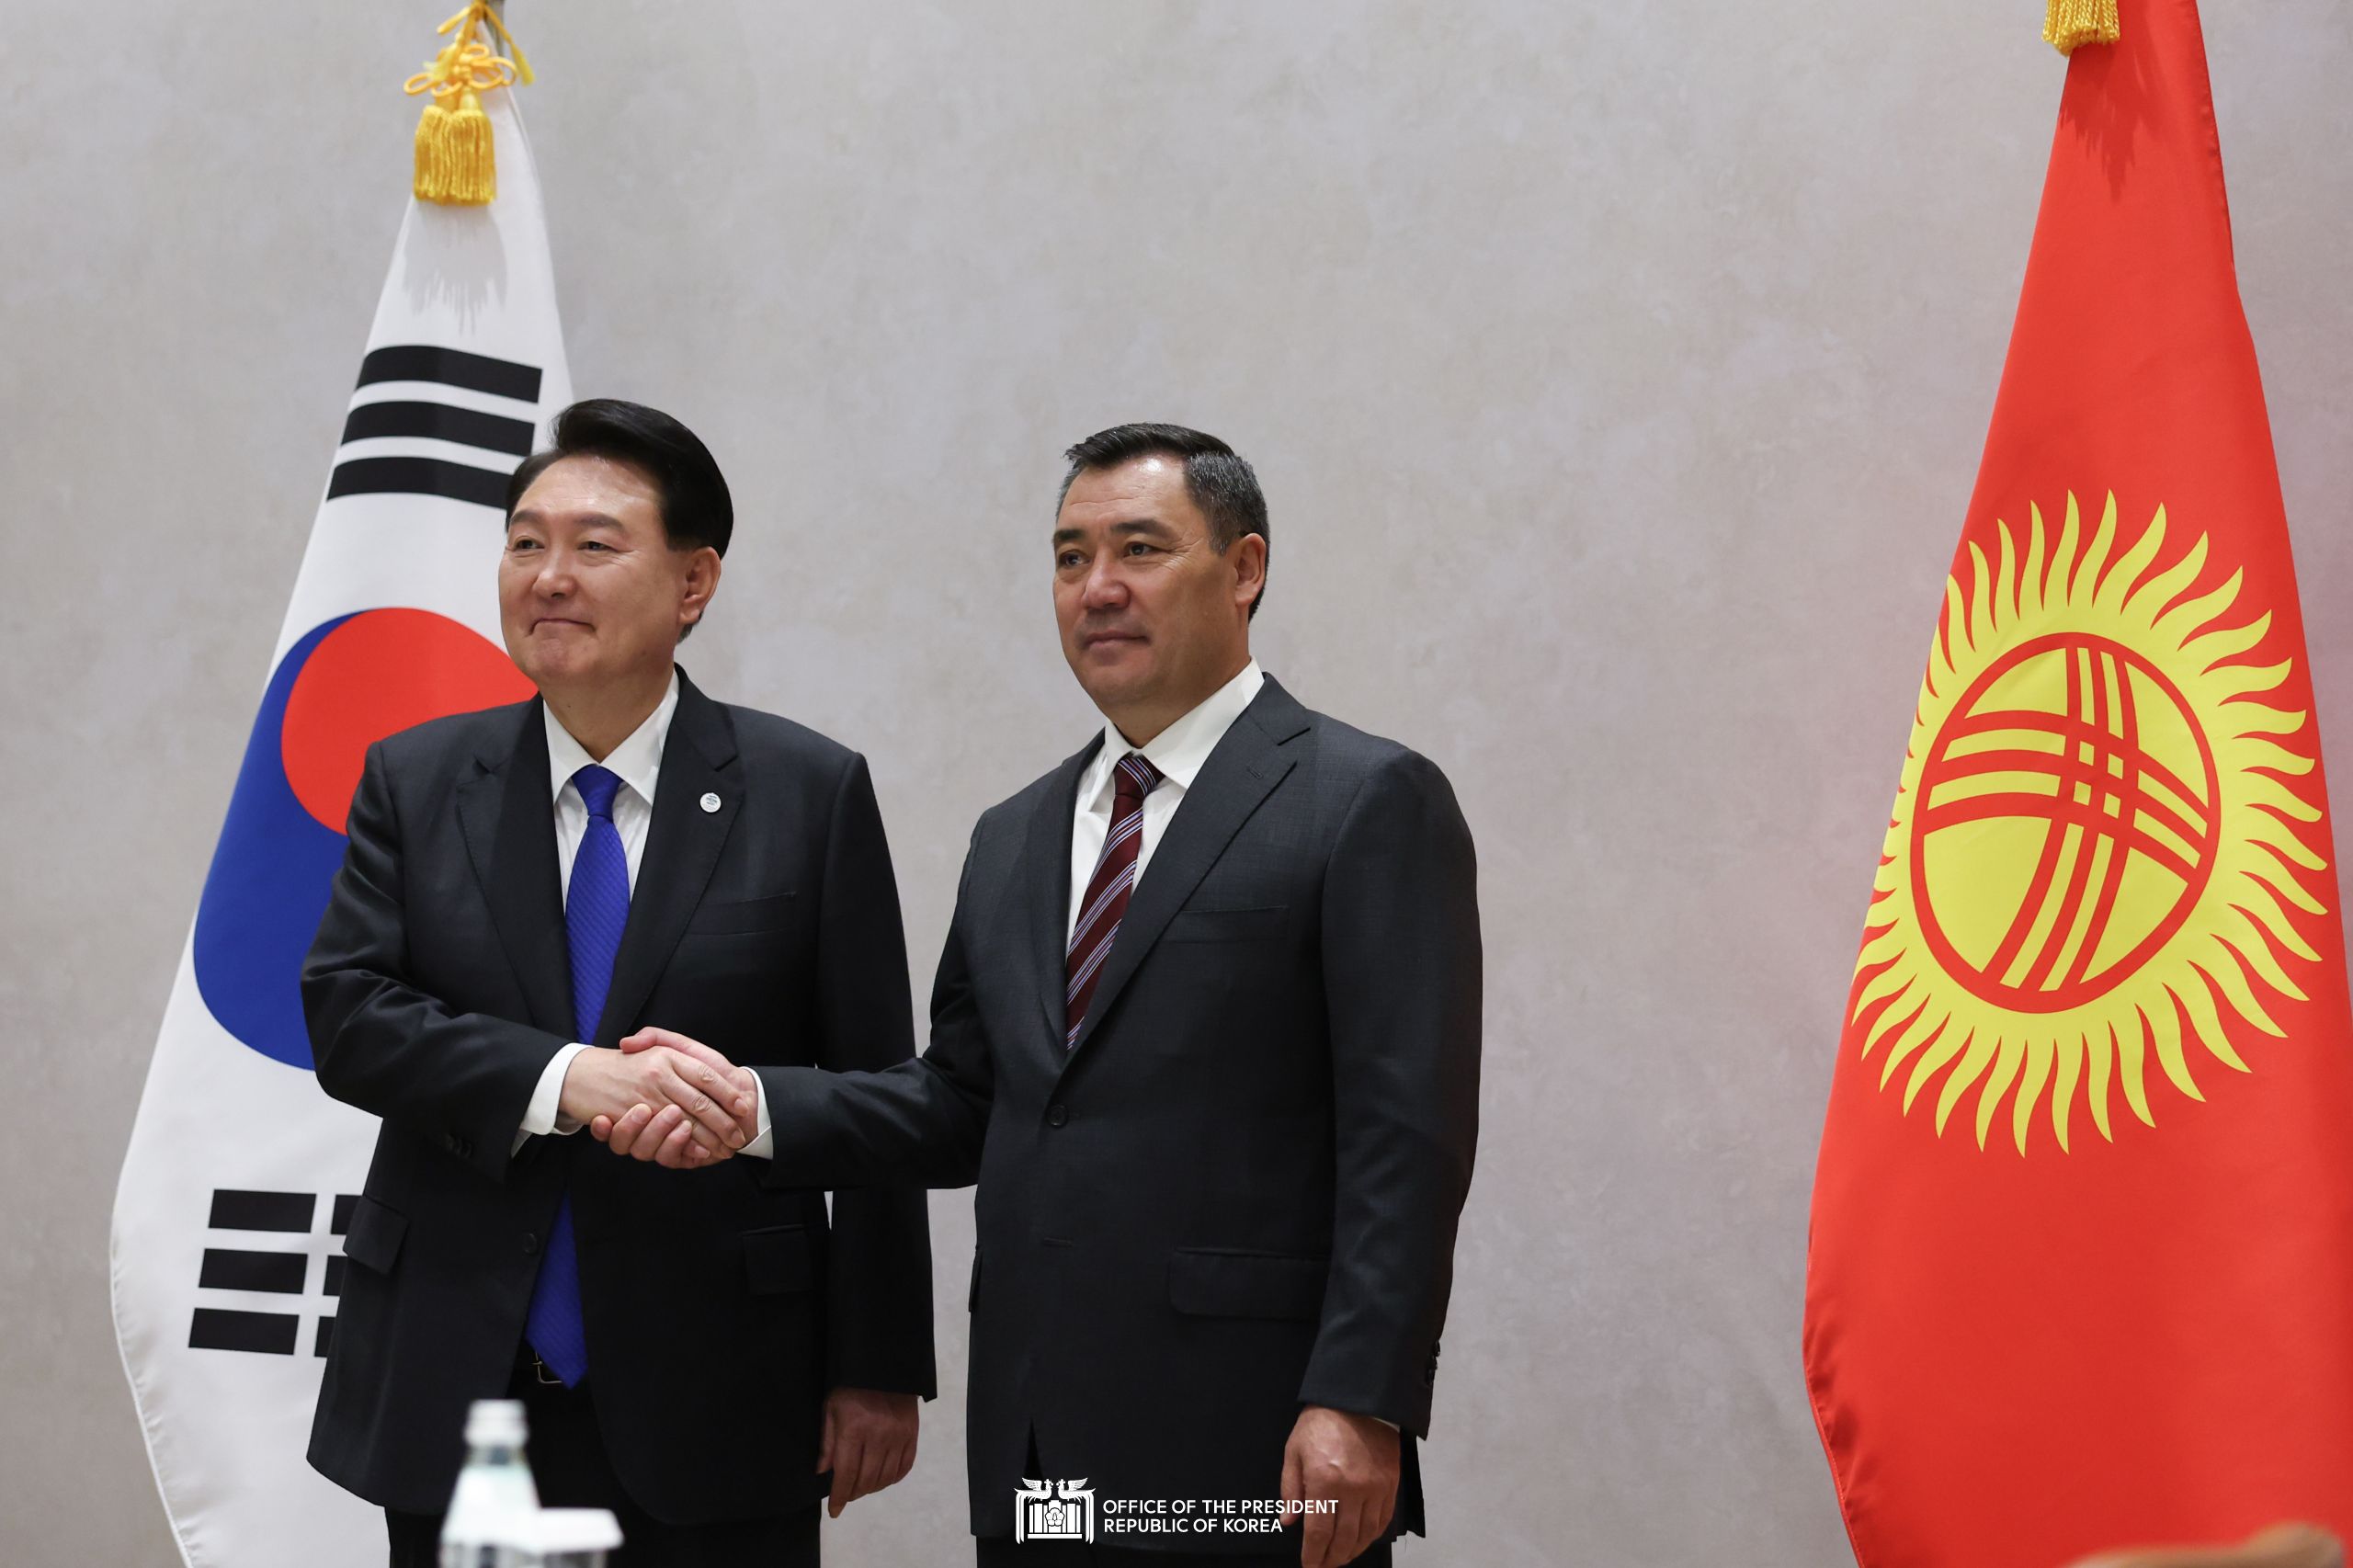 Korea-Kyrgyzstan Summit in New York slide 1